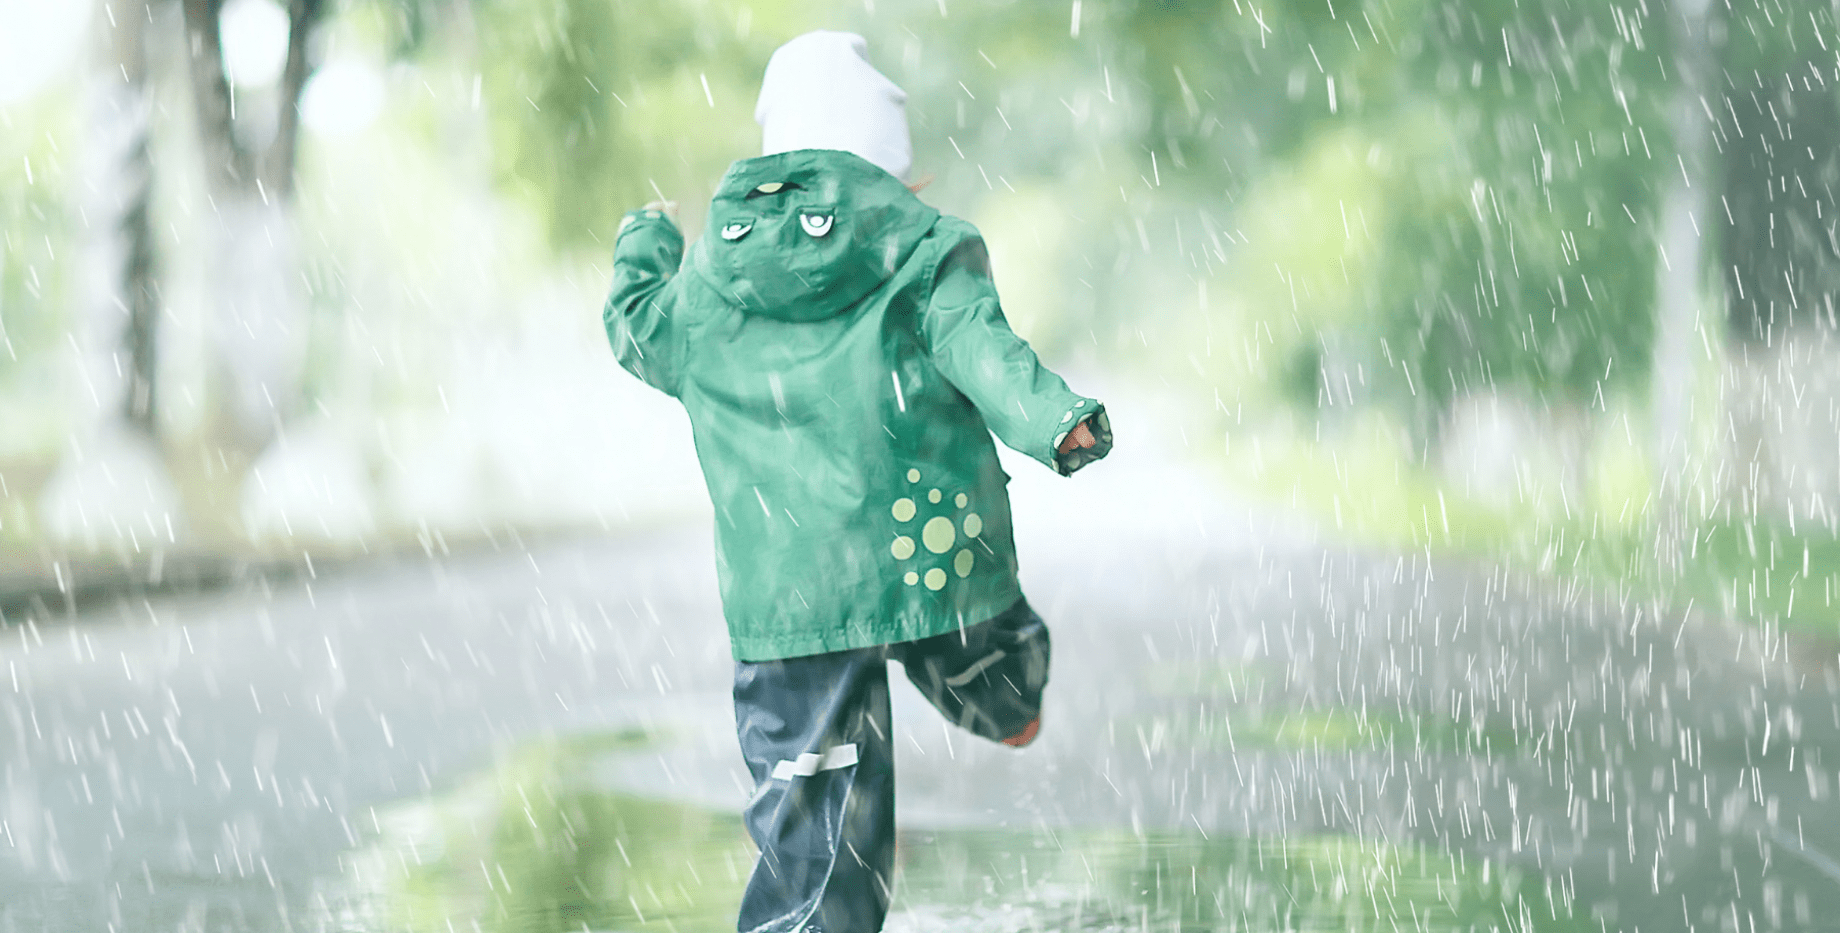 enfant sous la pluie